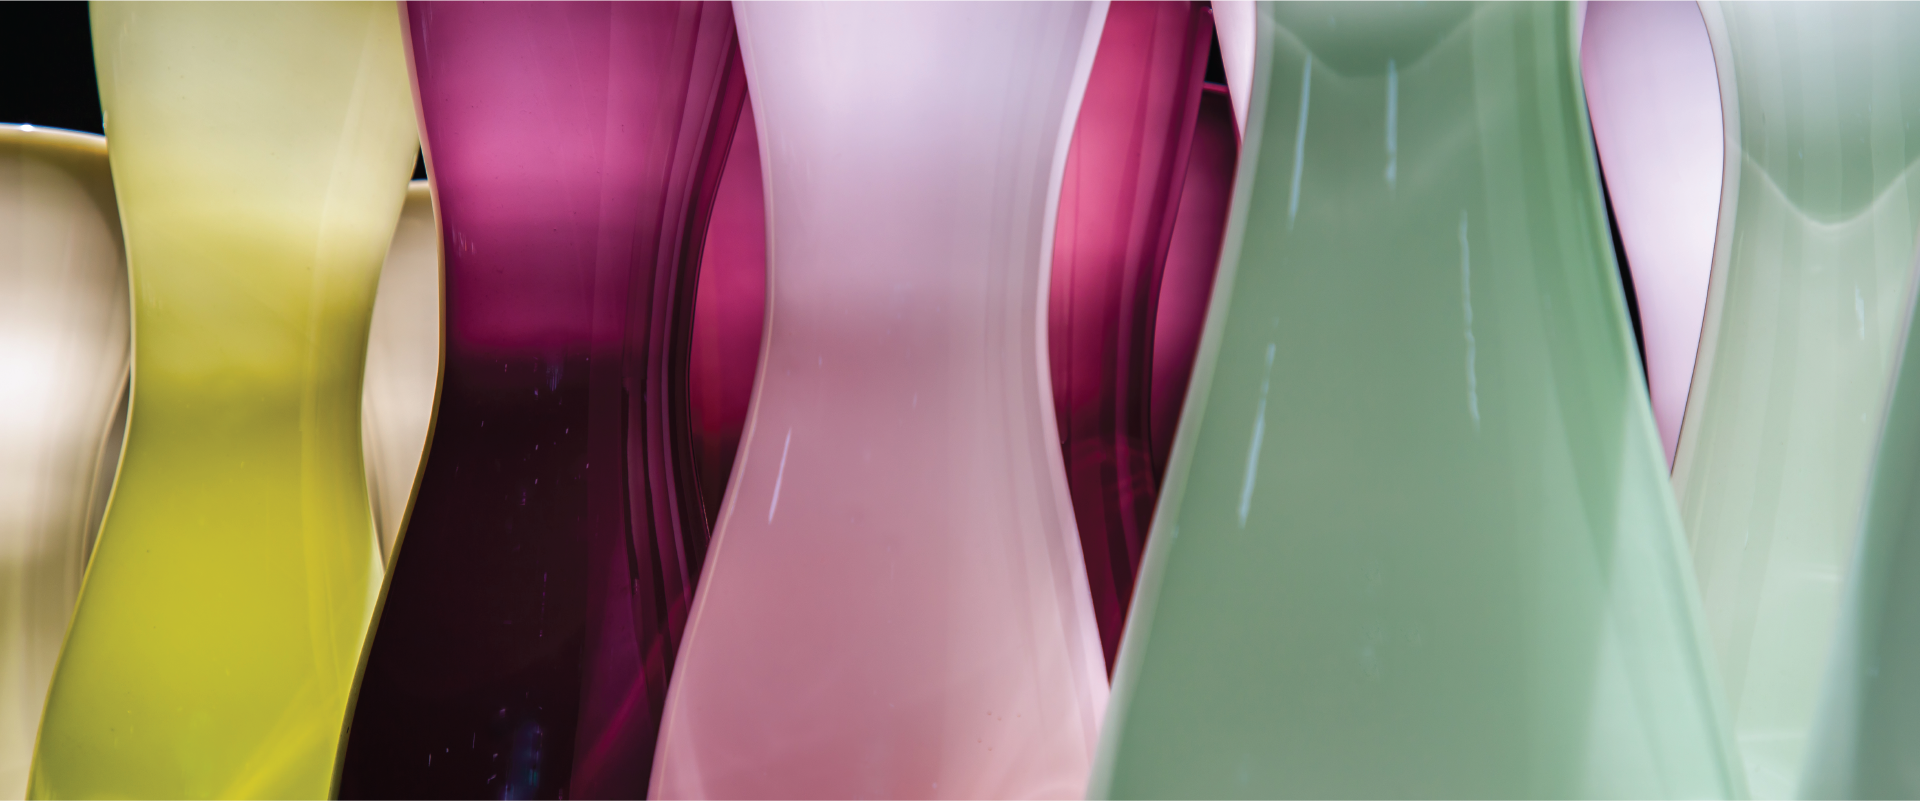 glass-vases Slider Thin